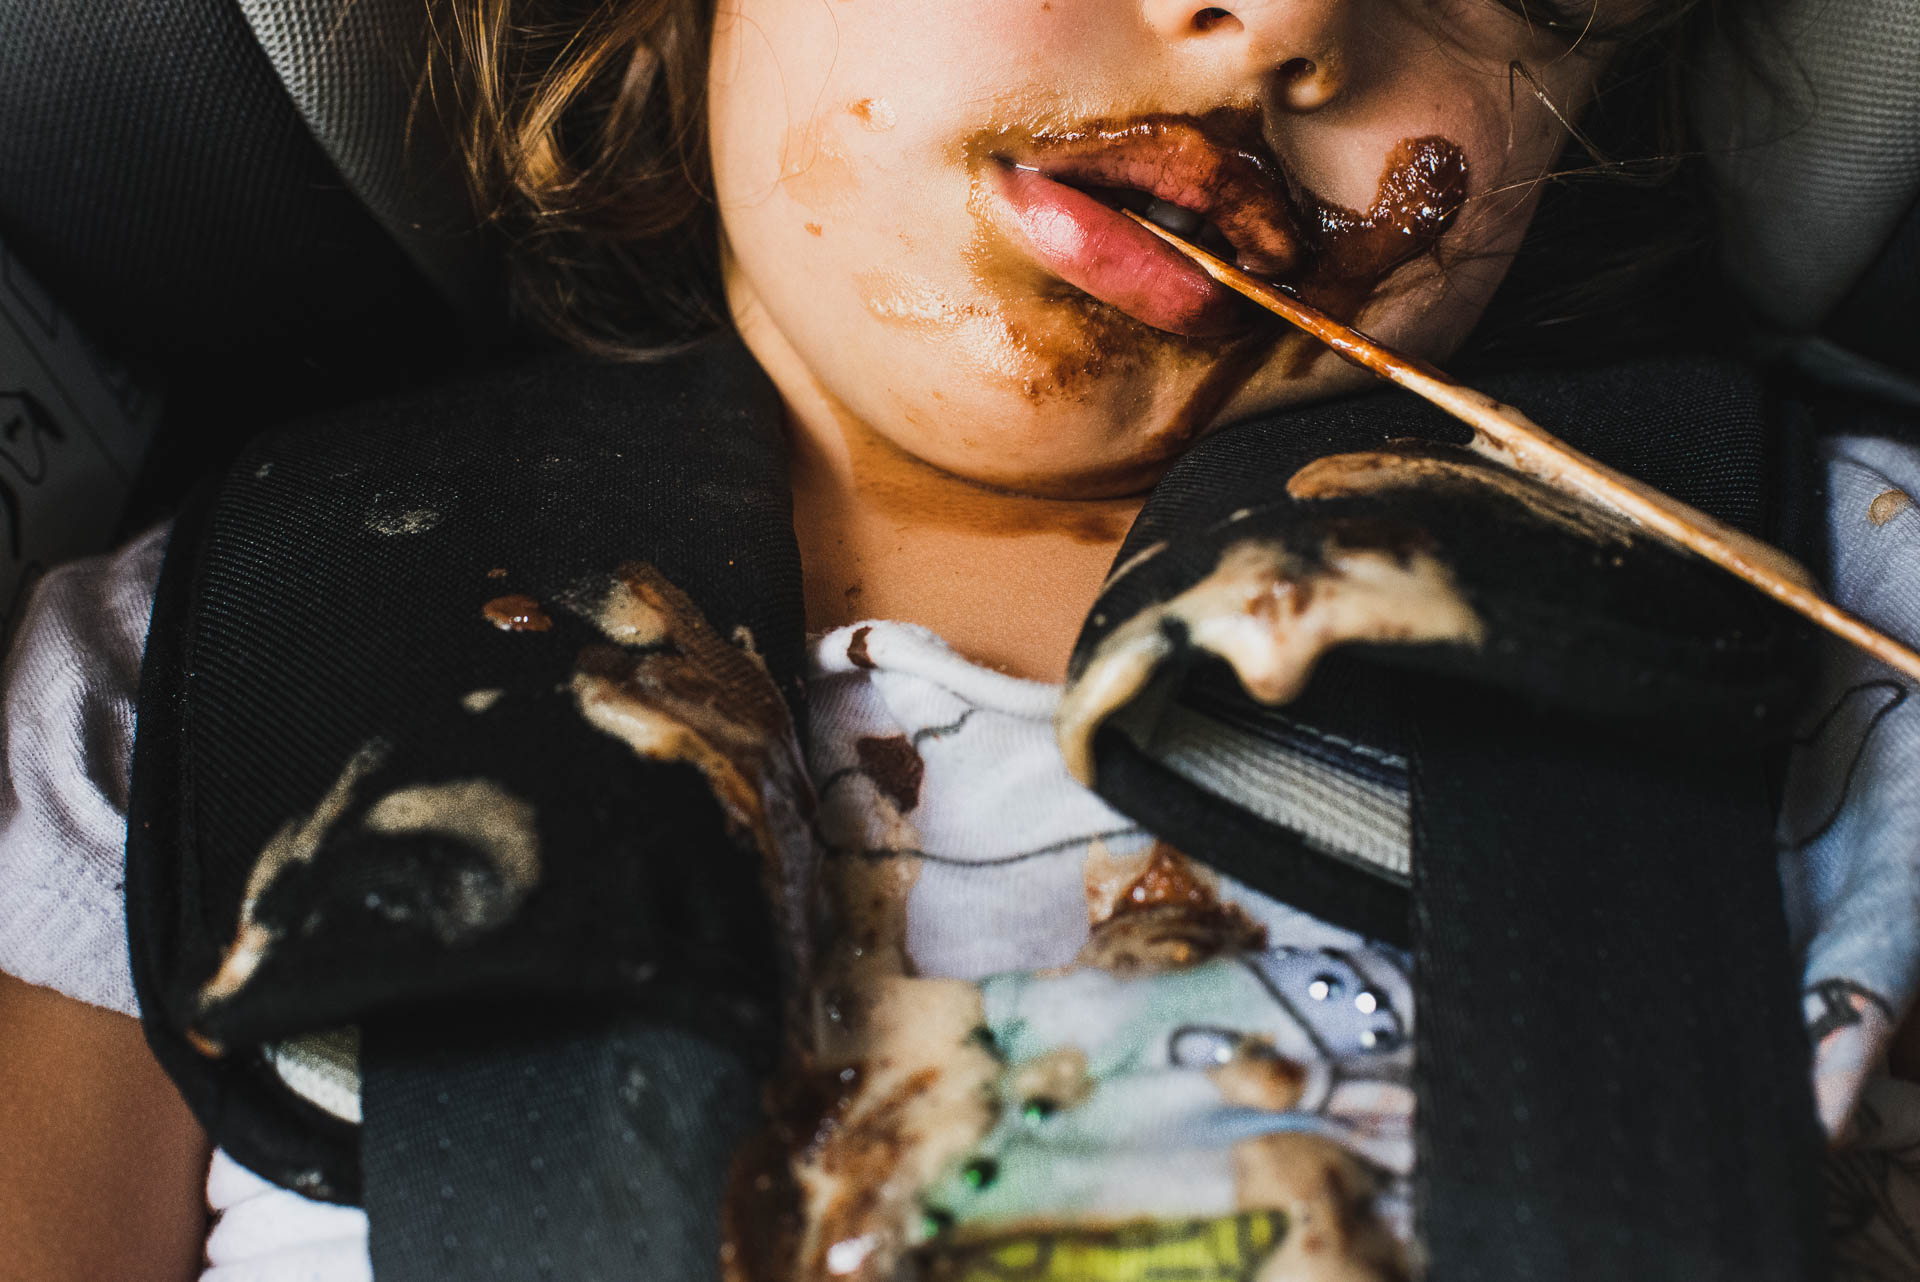 Kind eingeschlafen im Kindersitz mit Glacestängel im Mund und Glaceresten auf der Kleidung